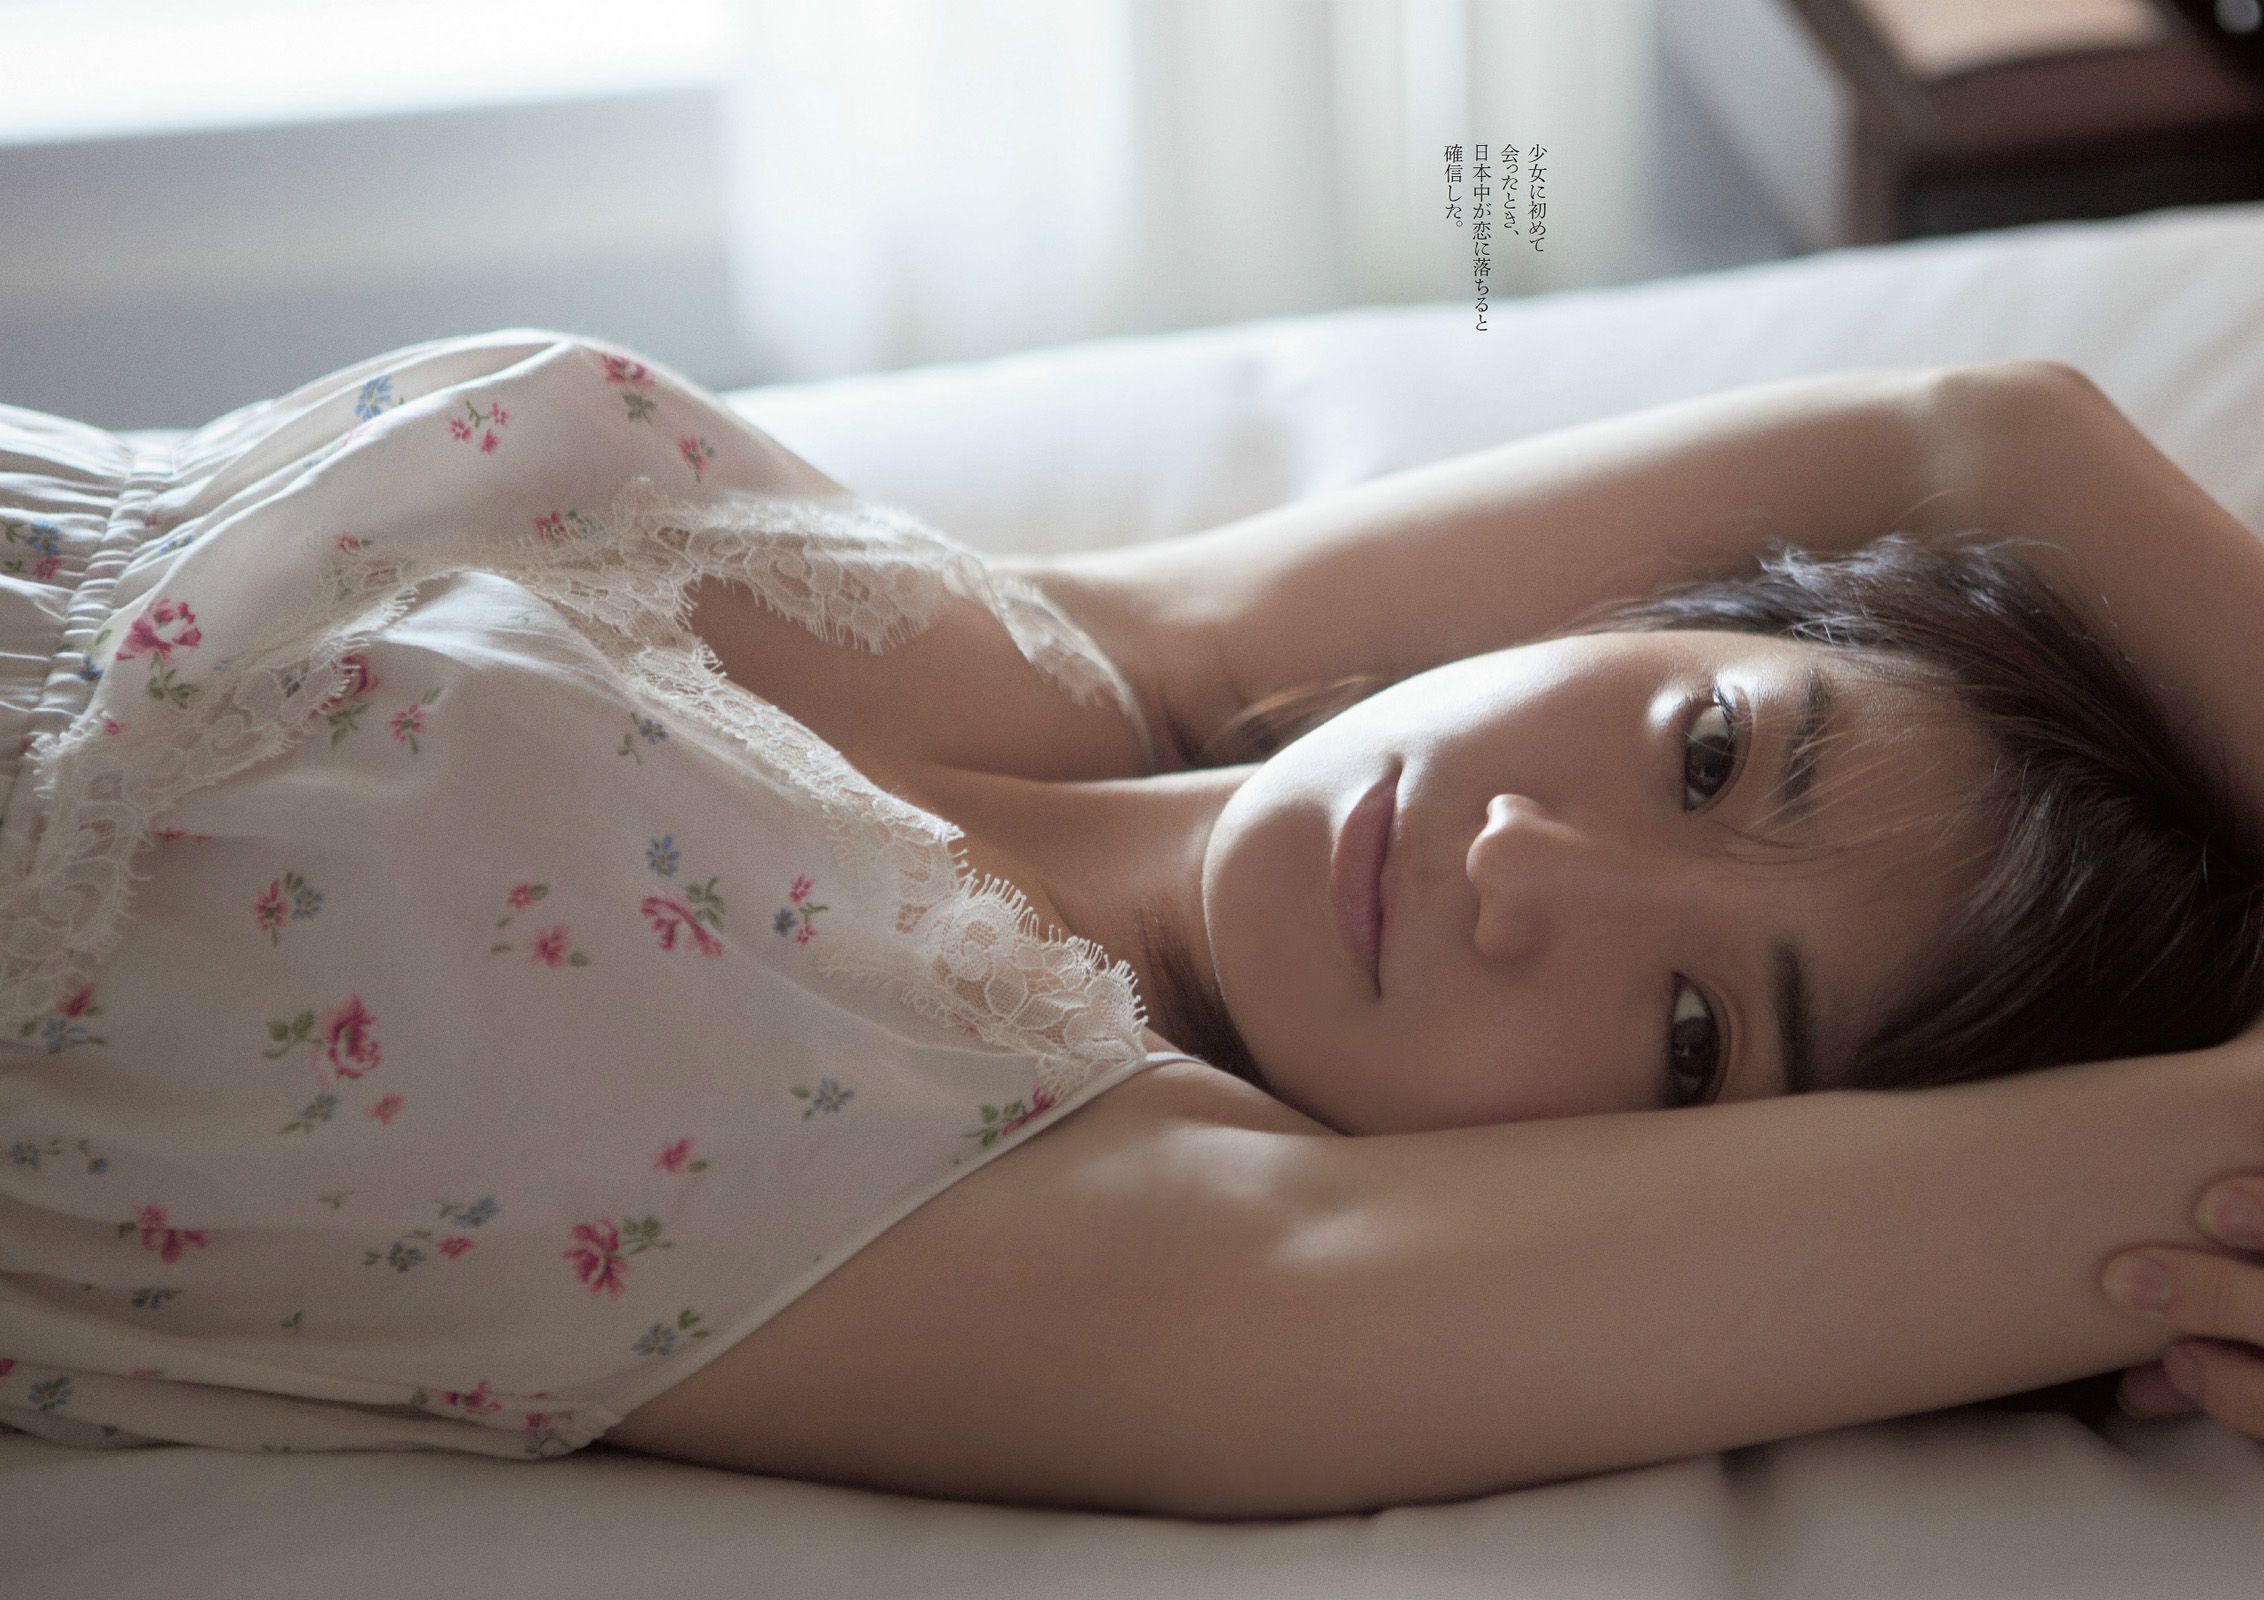 Yuko Oshima Mari Yamachi Mio Otani Rina Koike Mai Kamuro Aiko Eguchi [Wöchentlicher Playboy] 2014 Nr. 10 Foto Seite 13 No.cc2145